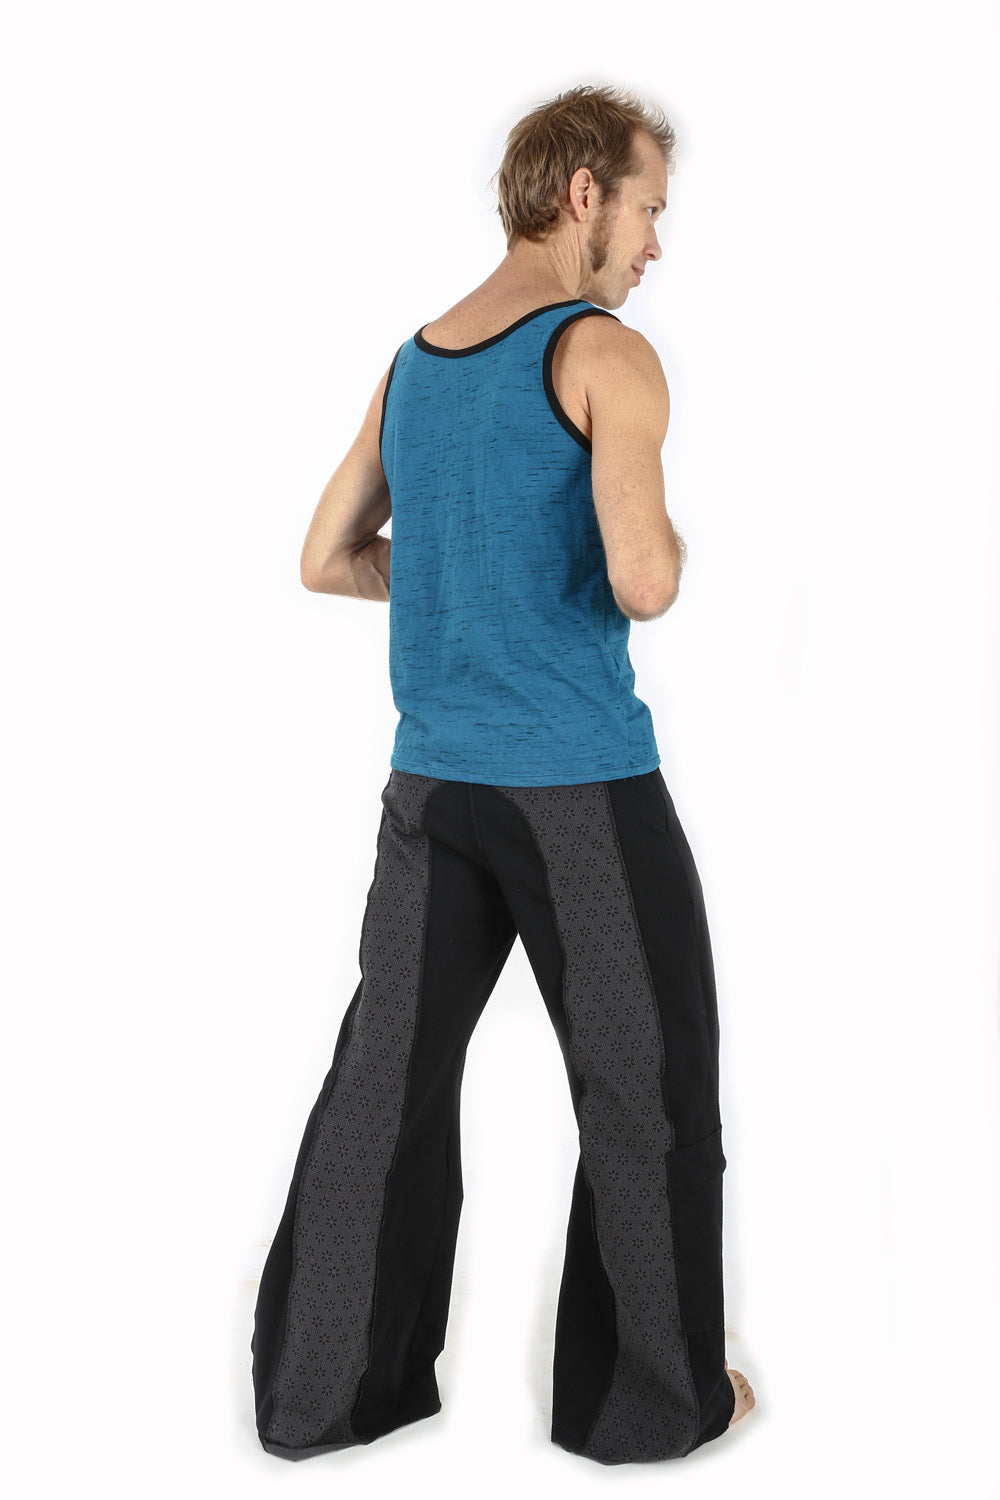 Mens Yoga Pants - OM Symbol Meditation Martial Arts Pants